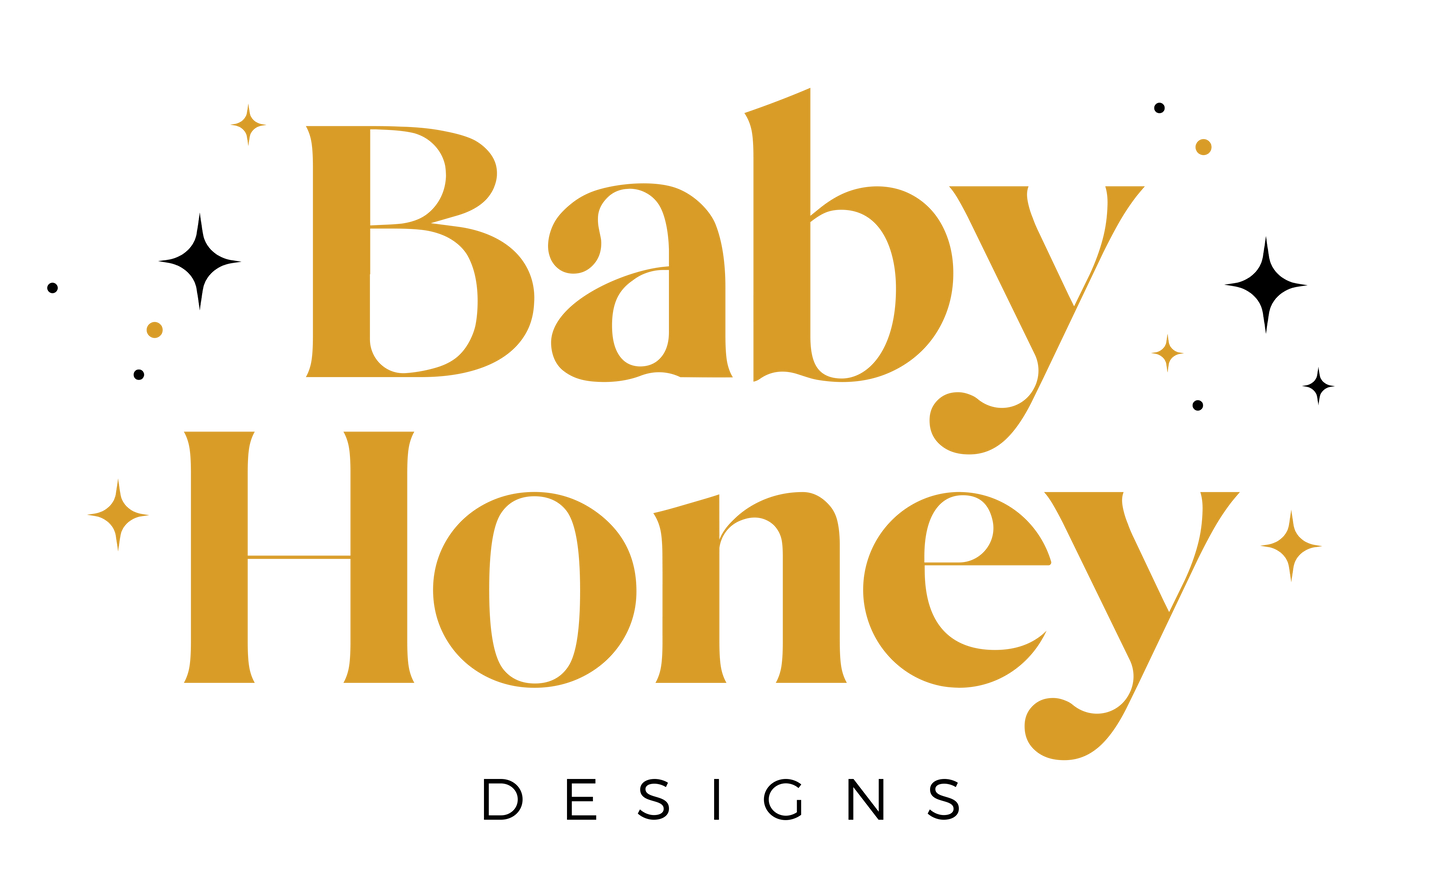 Baby Honey Gift Card